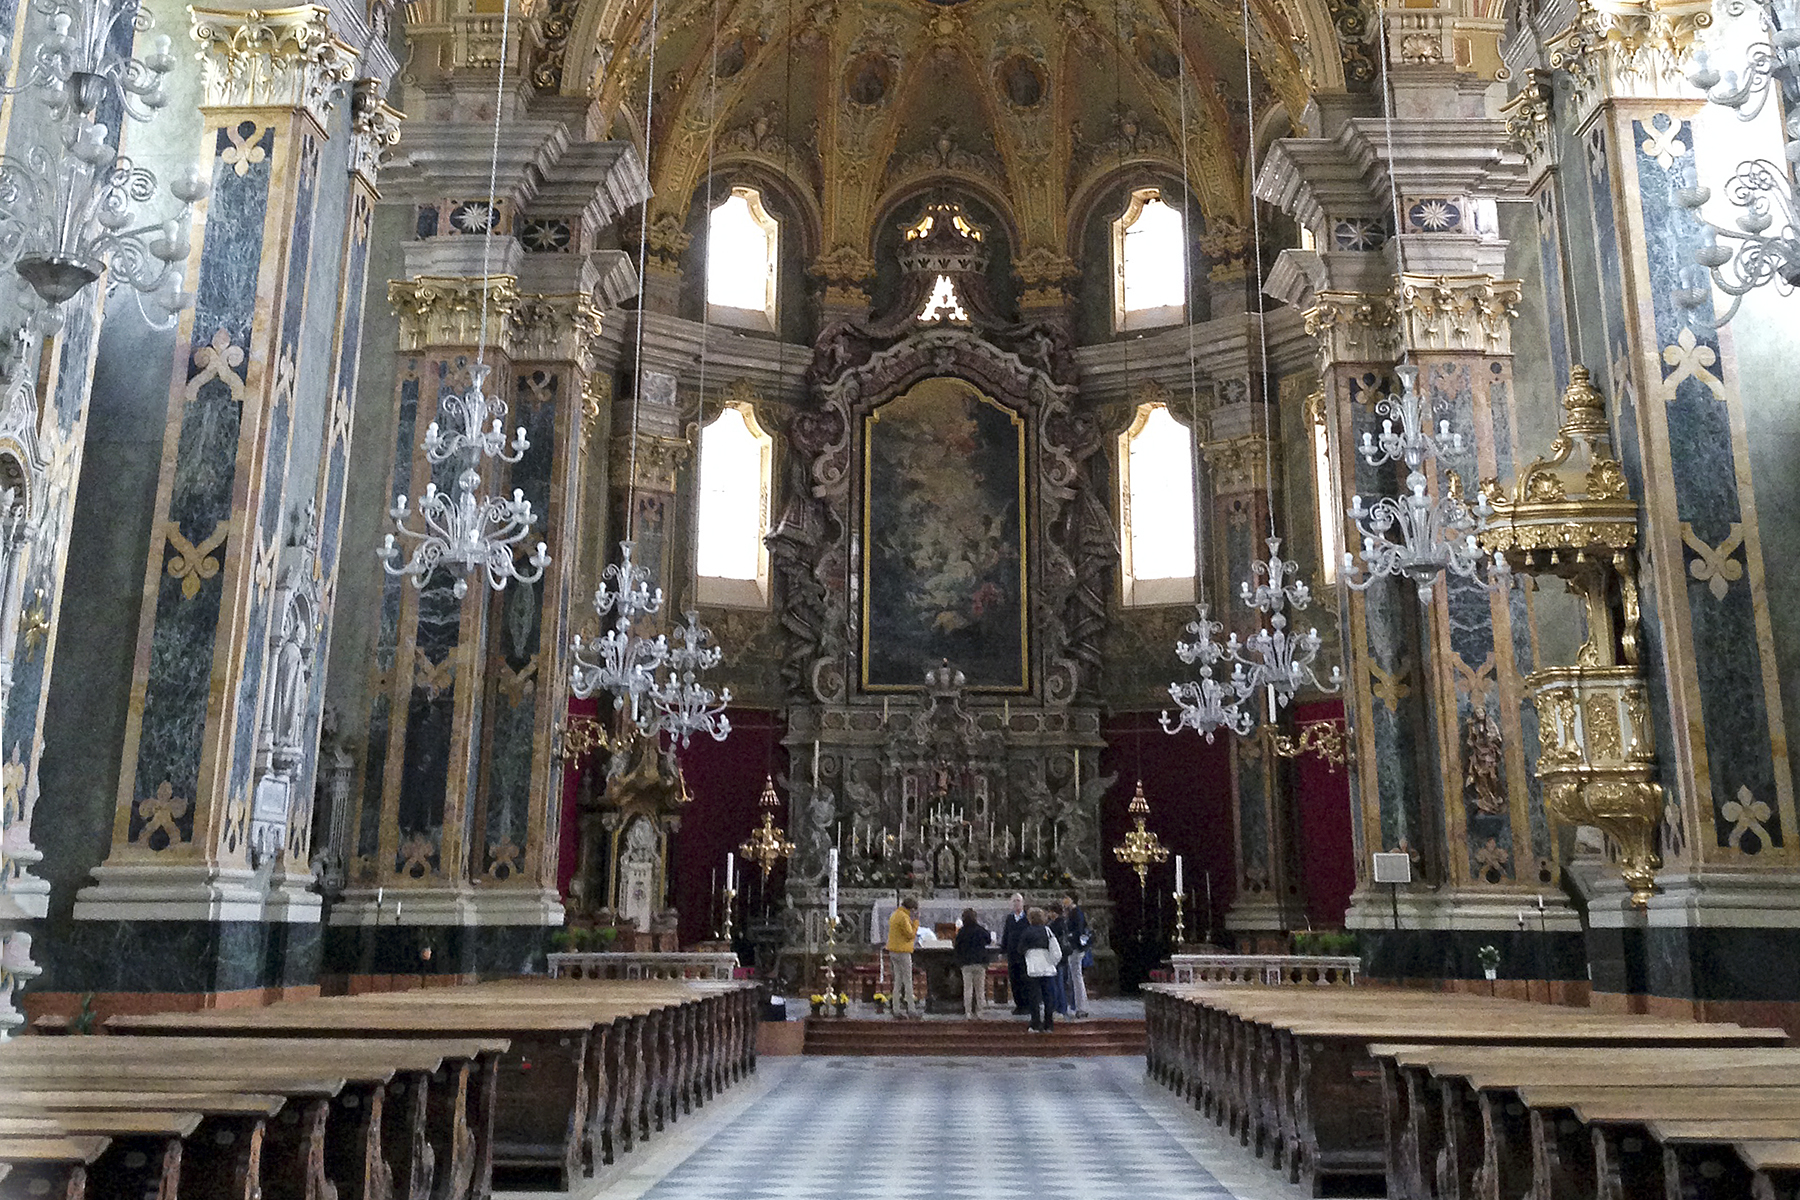 Bezaubernde Bischofsstadt in Südtirol: Die schönsten Highlights in Brixen